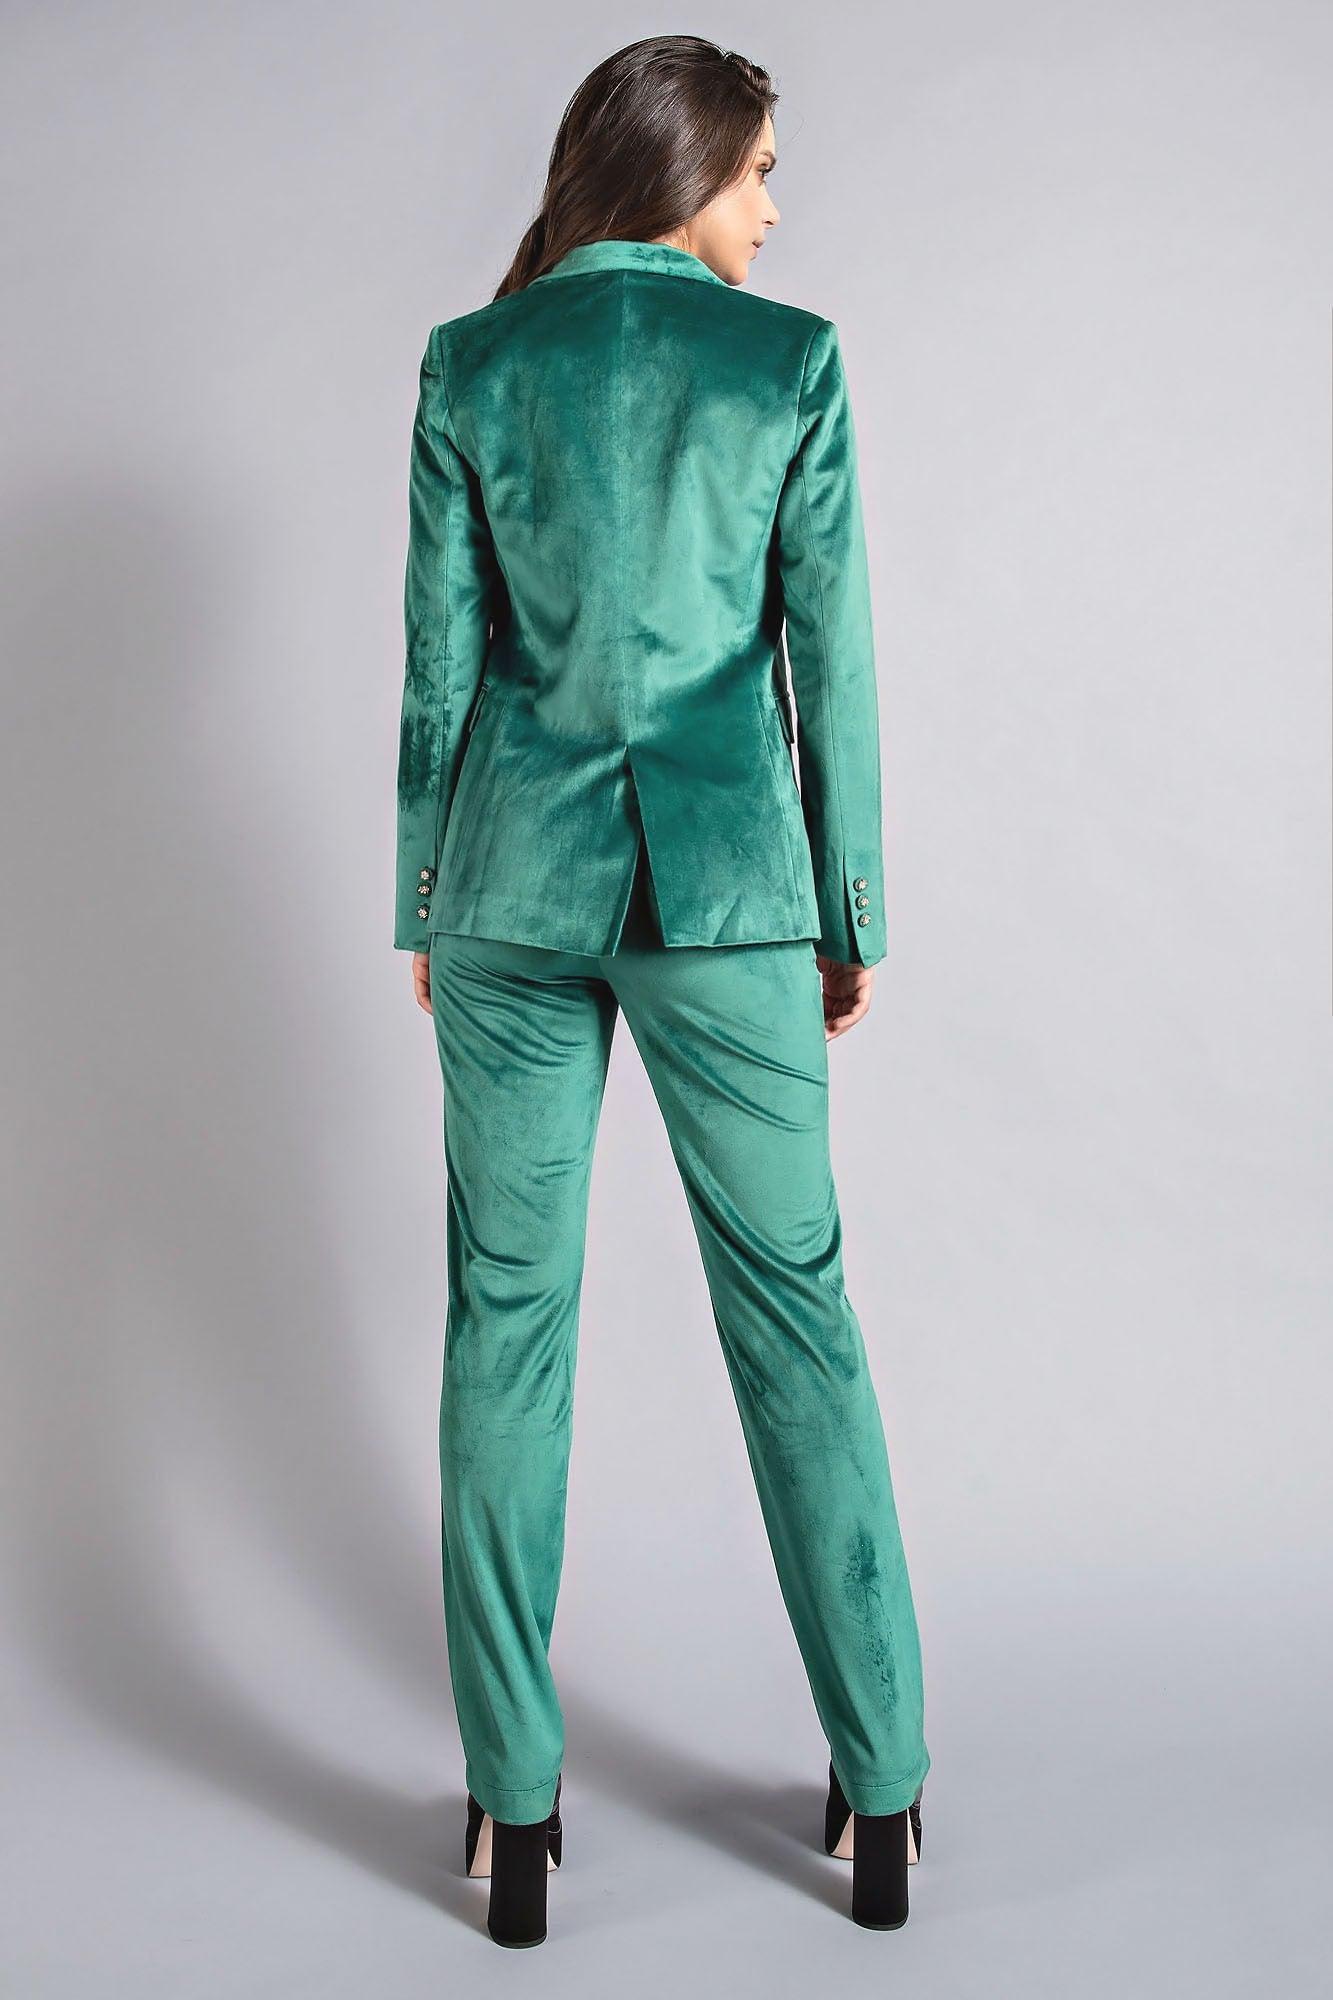 2pc set-velvet blazer & pants - RK Collections Boutique